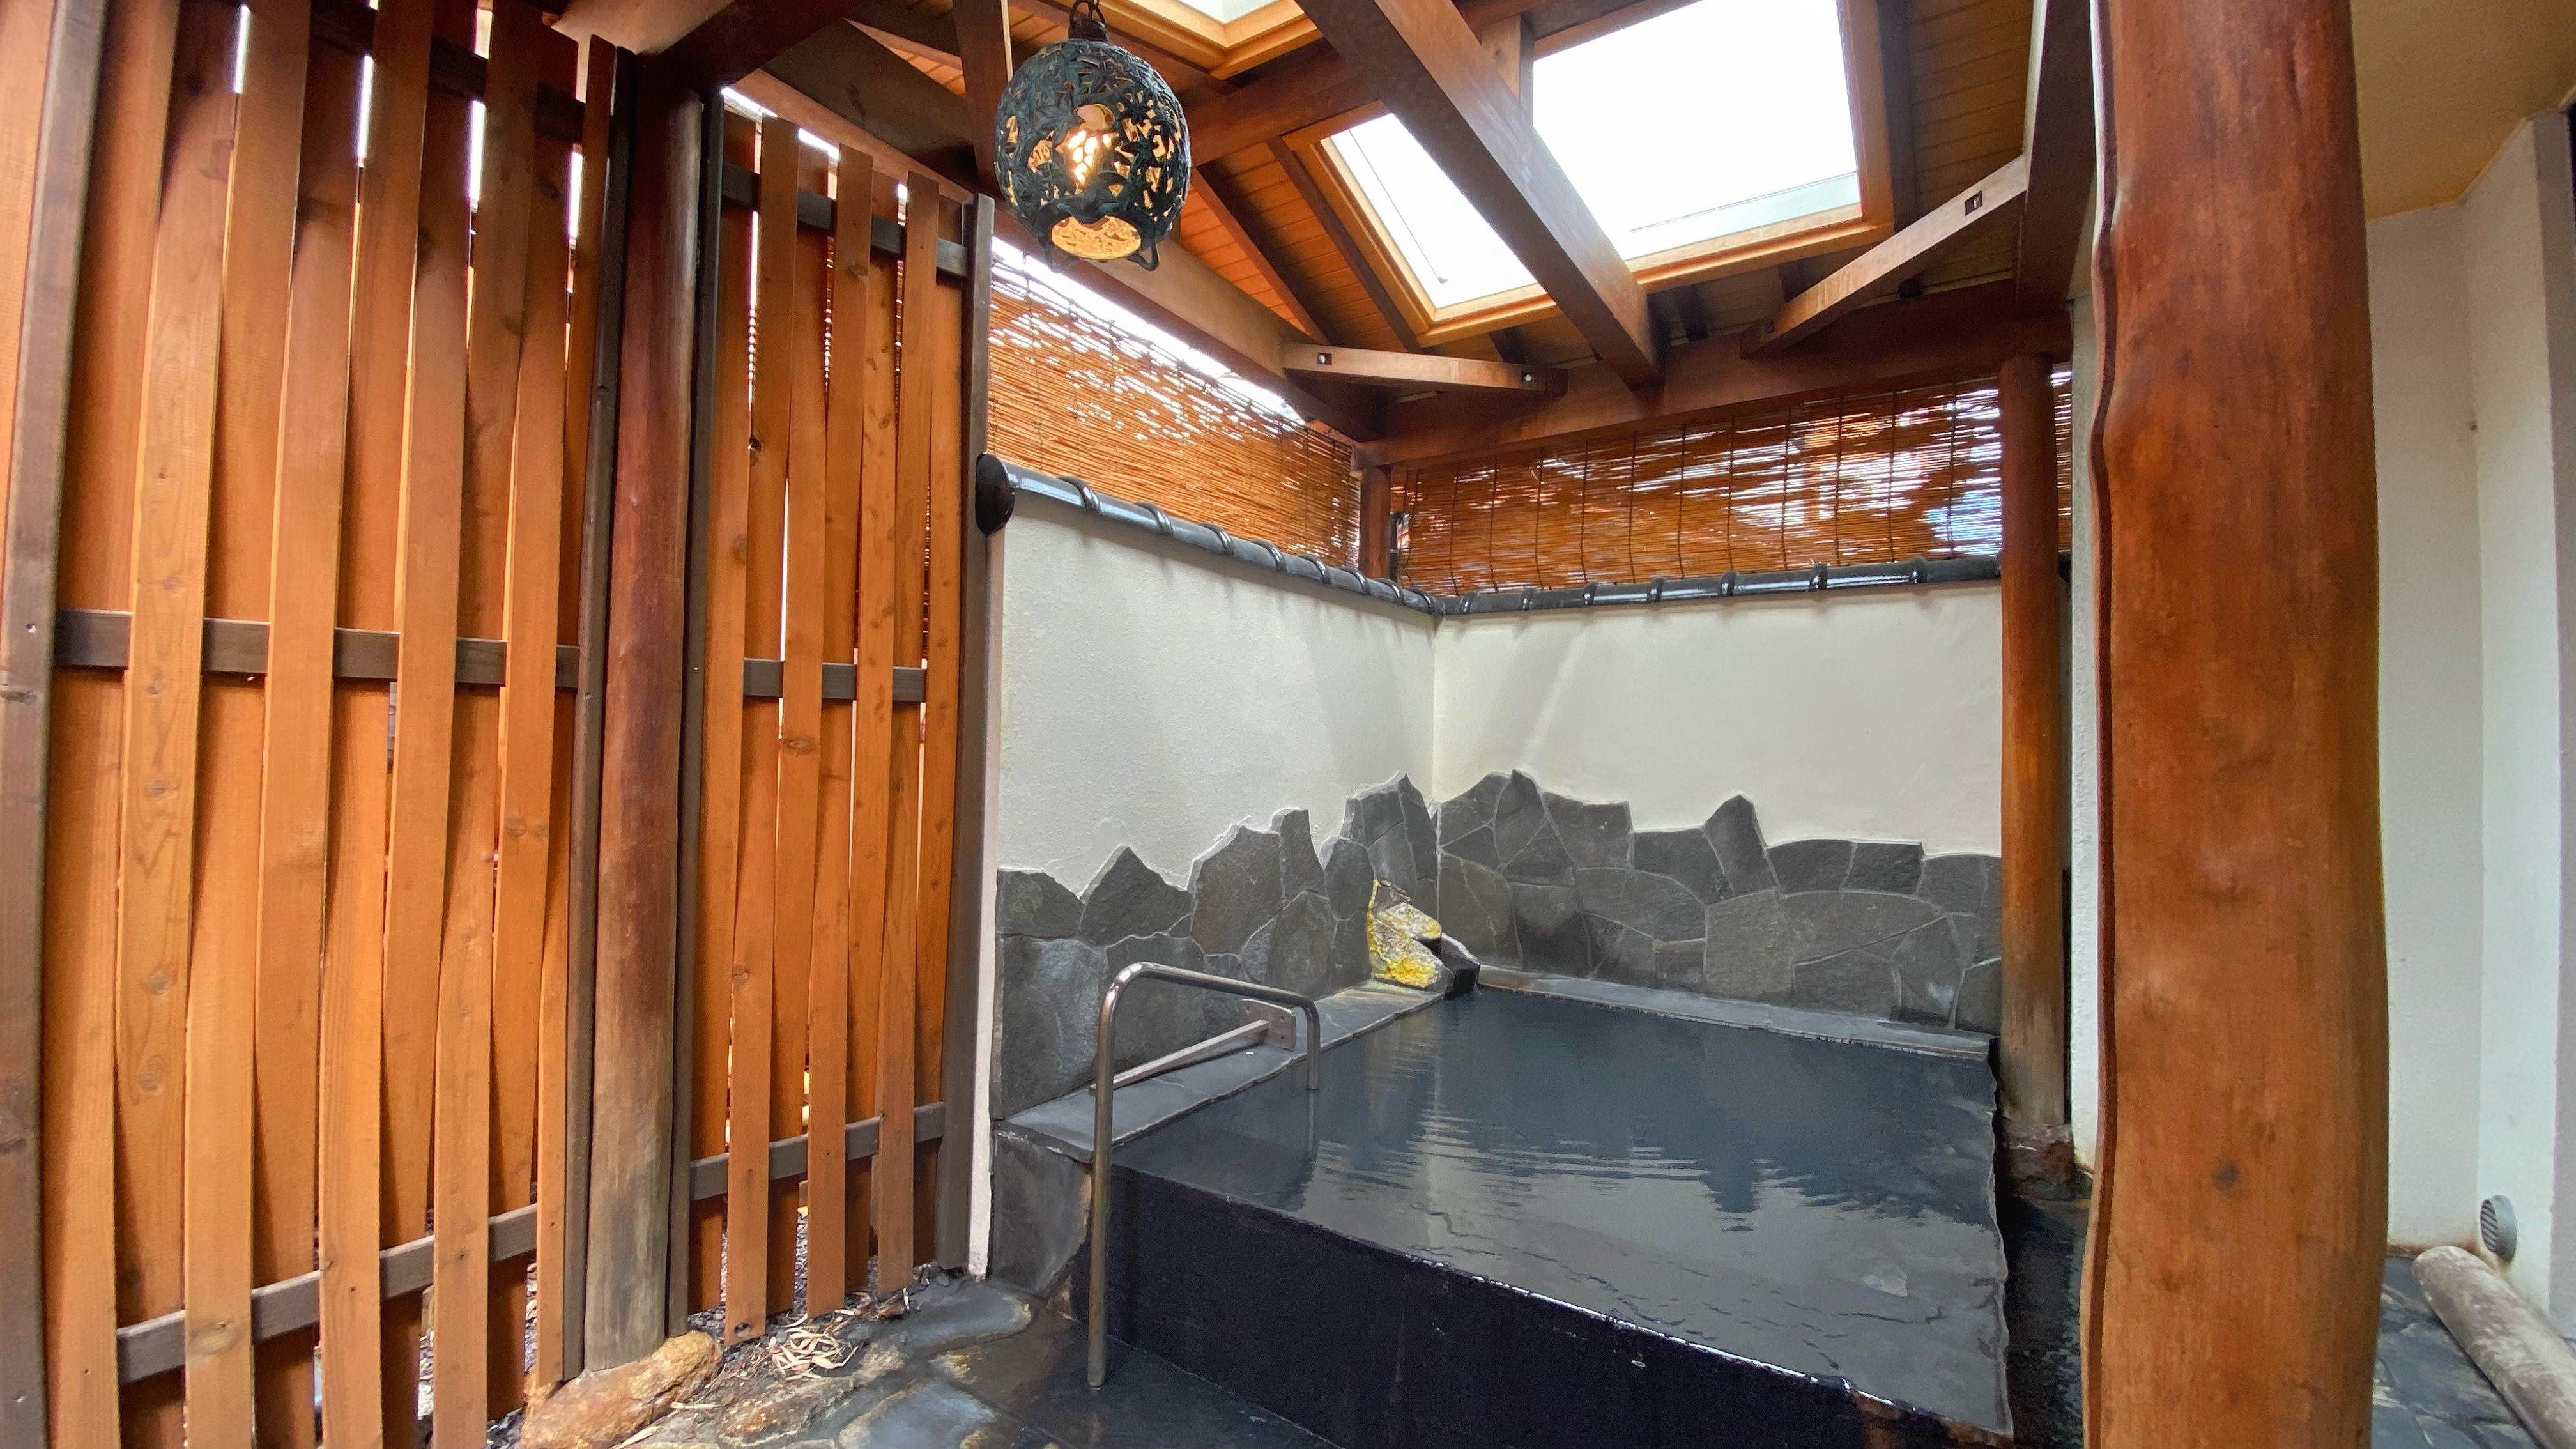 源泉かけ流し露天風呂「星見の湯」大浴場「竹生の湯」に併設されています。